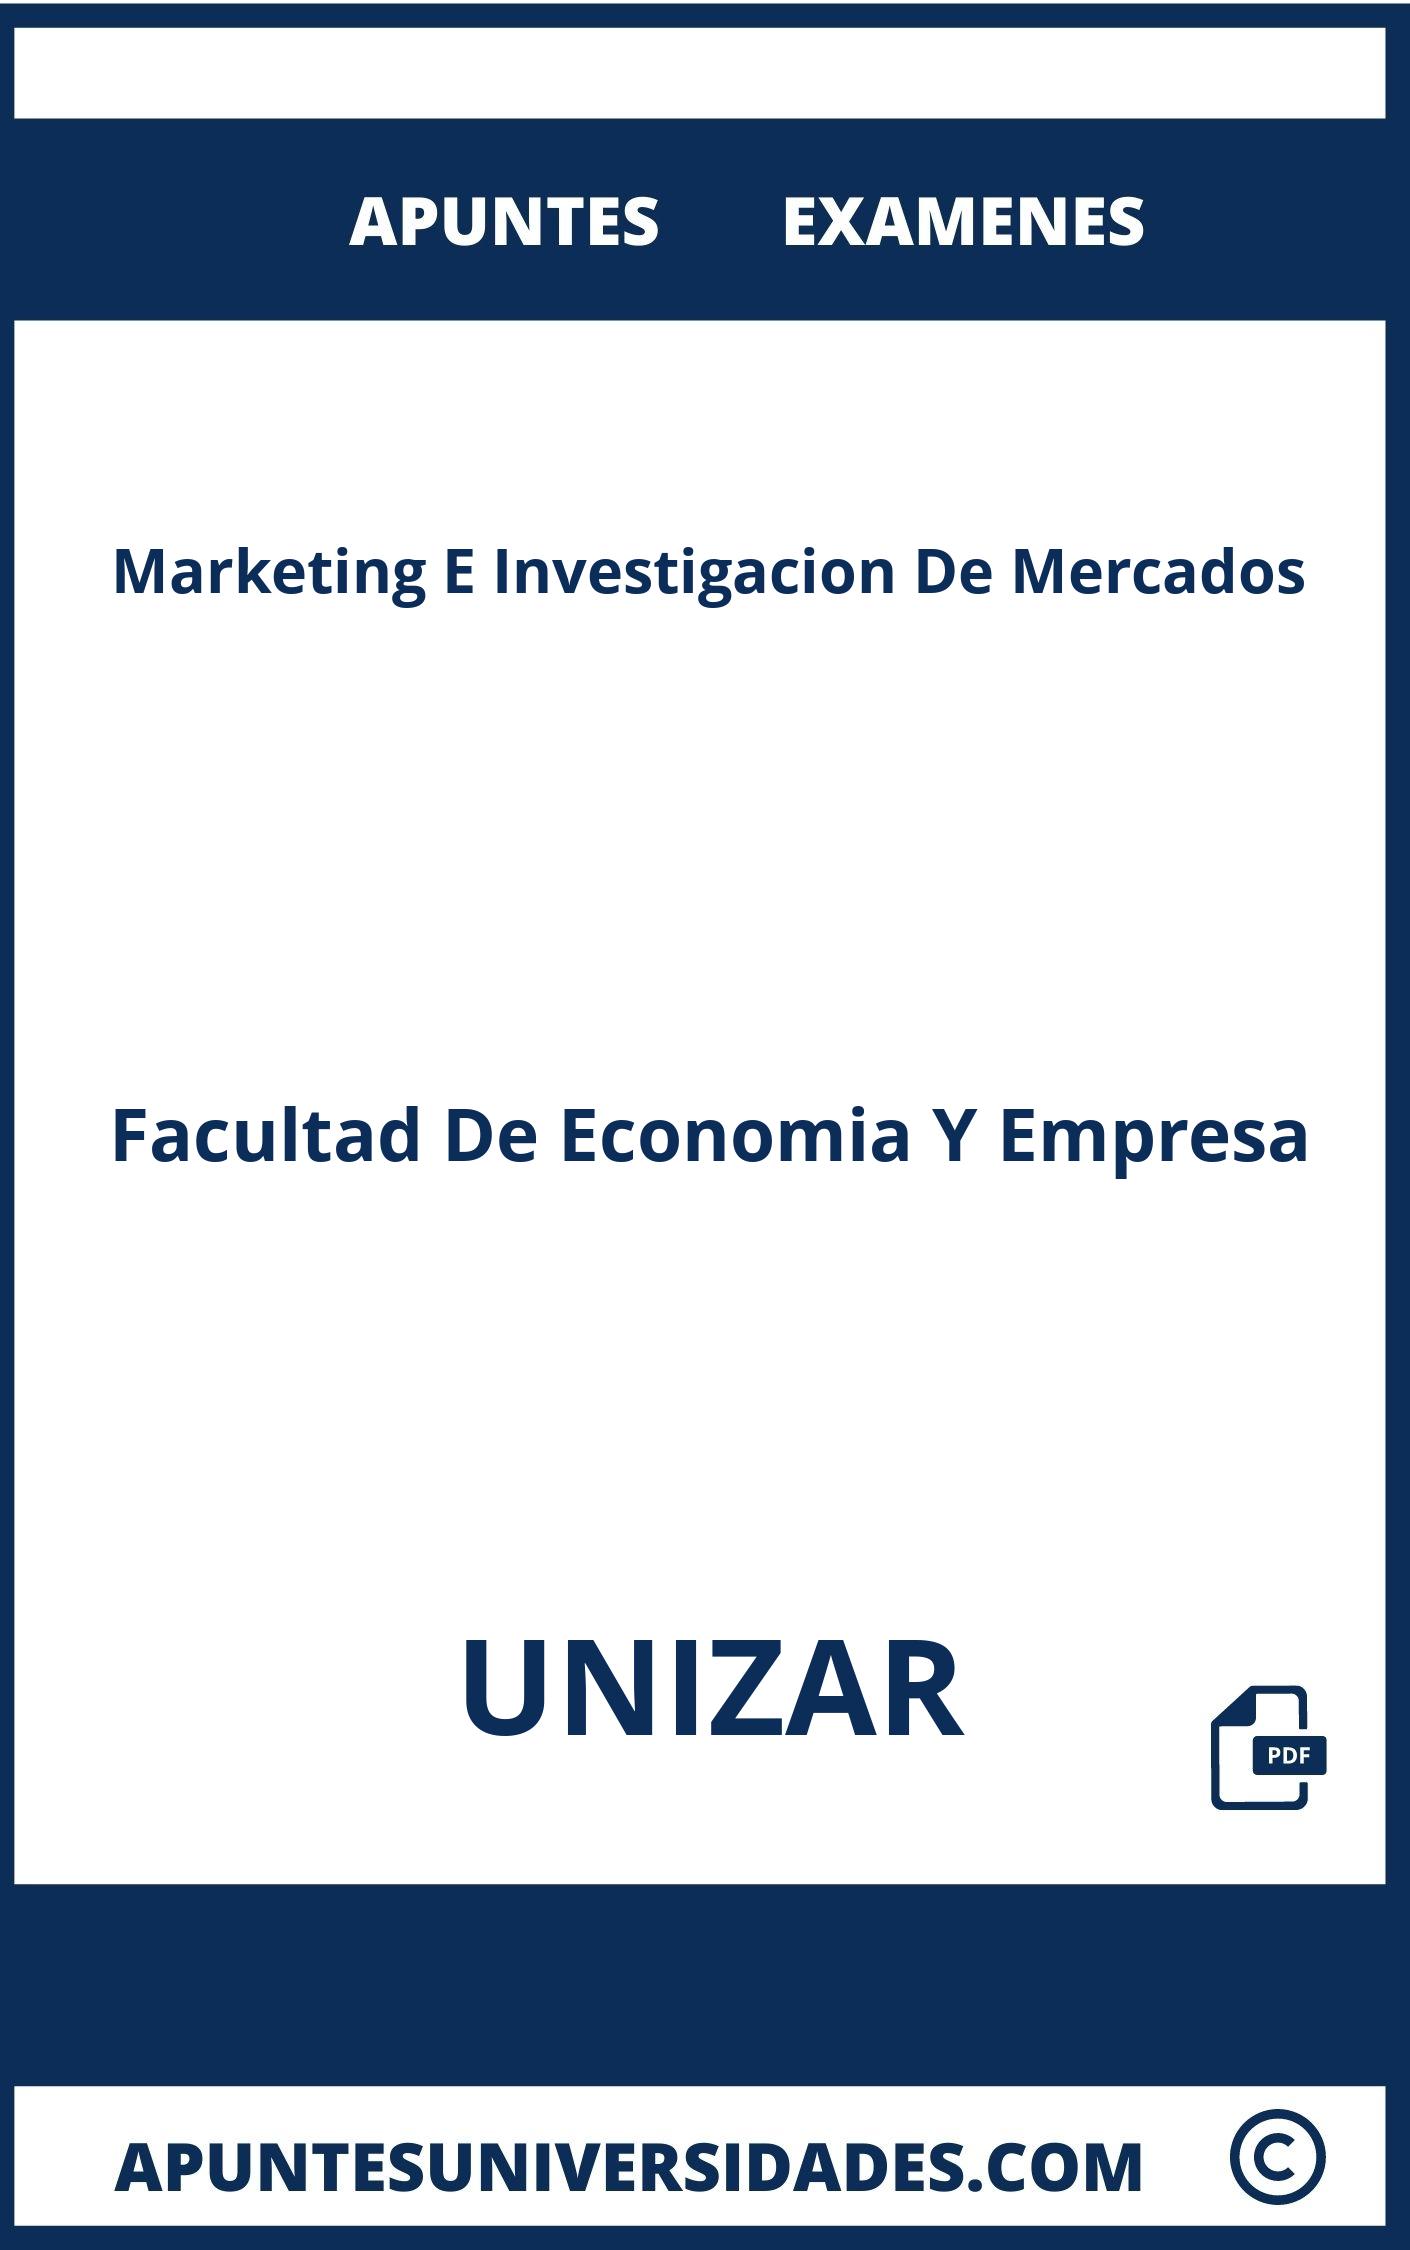 Examenes Marketing E Investigacion De Mercados UNIZAR y Apuntes